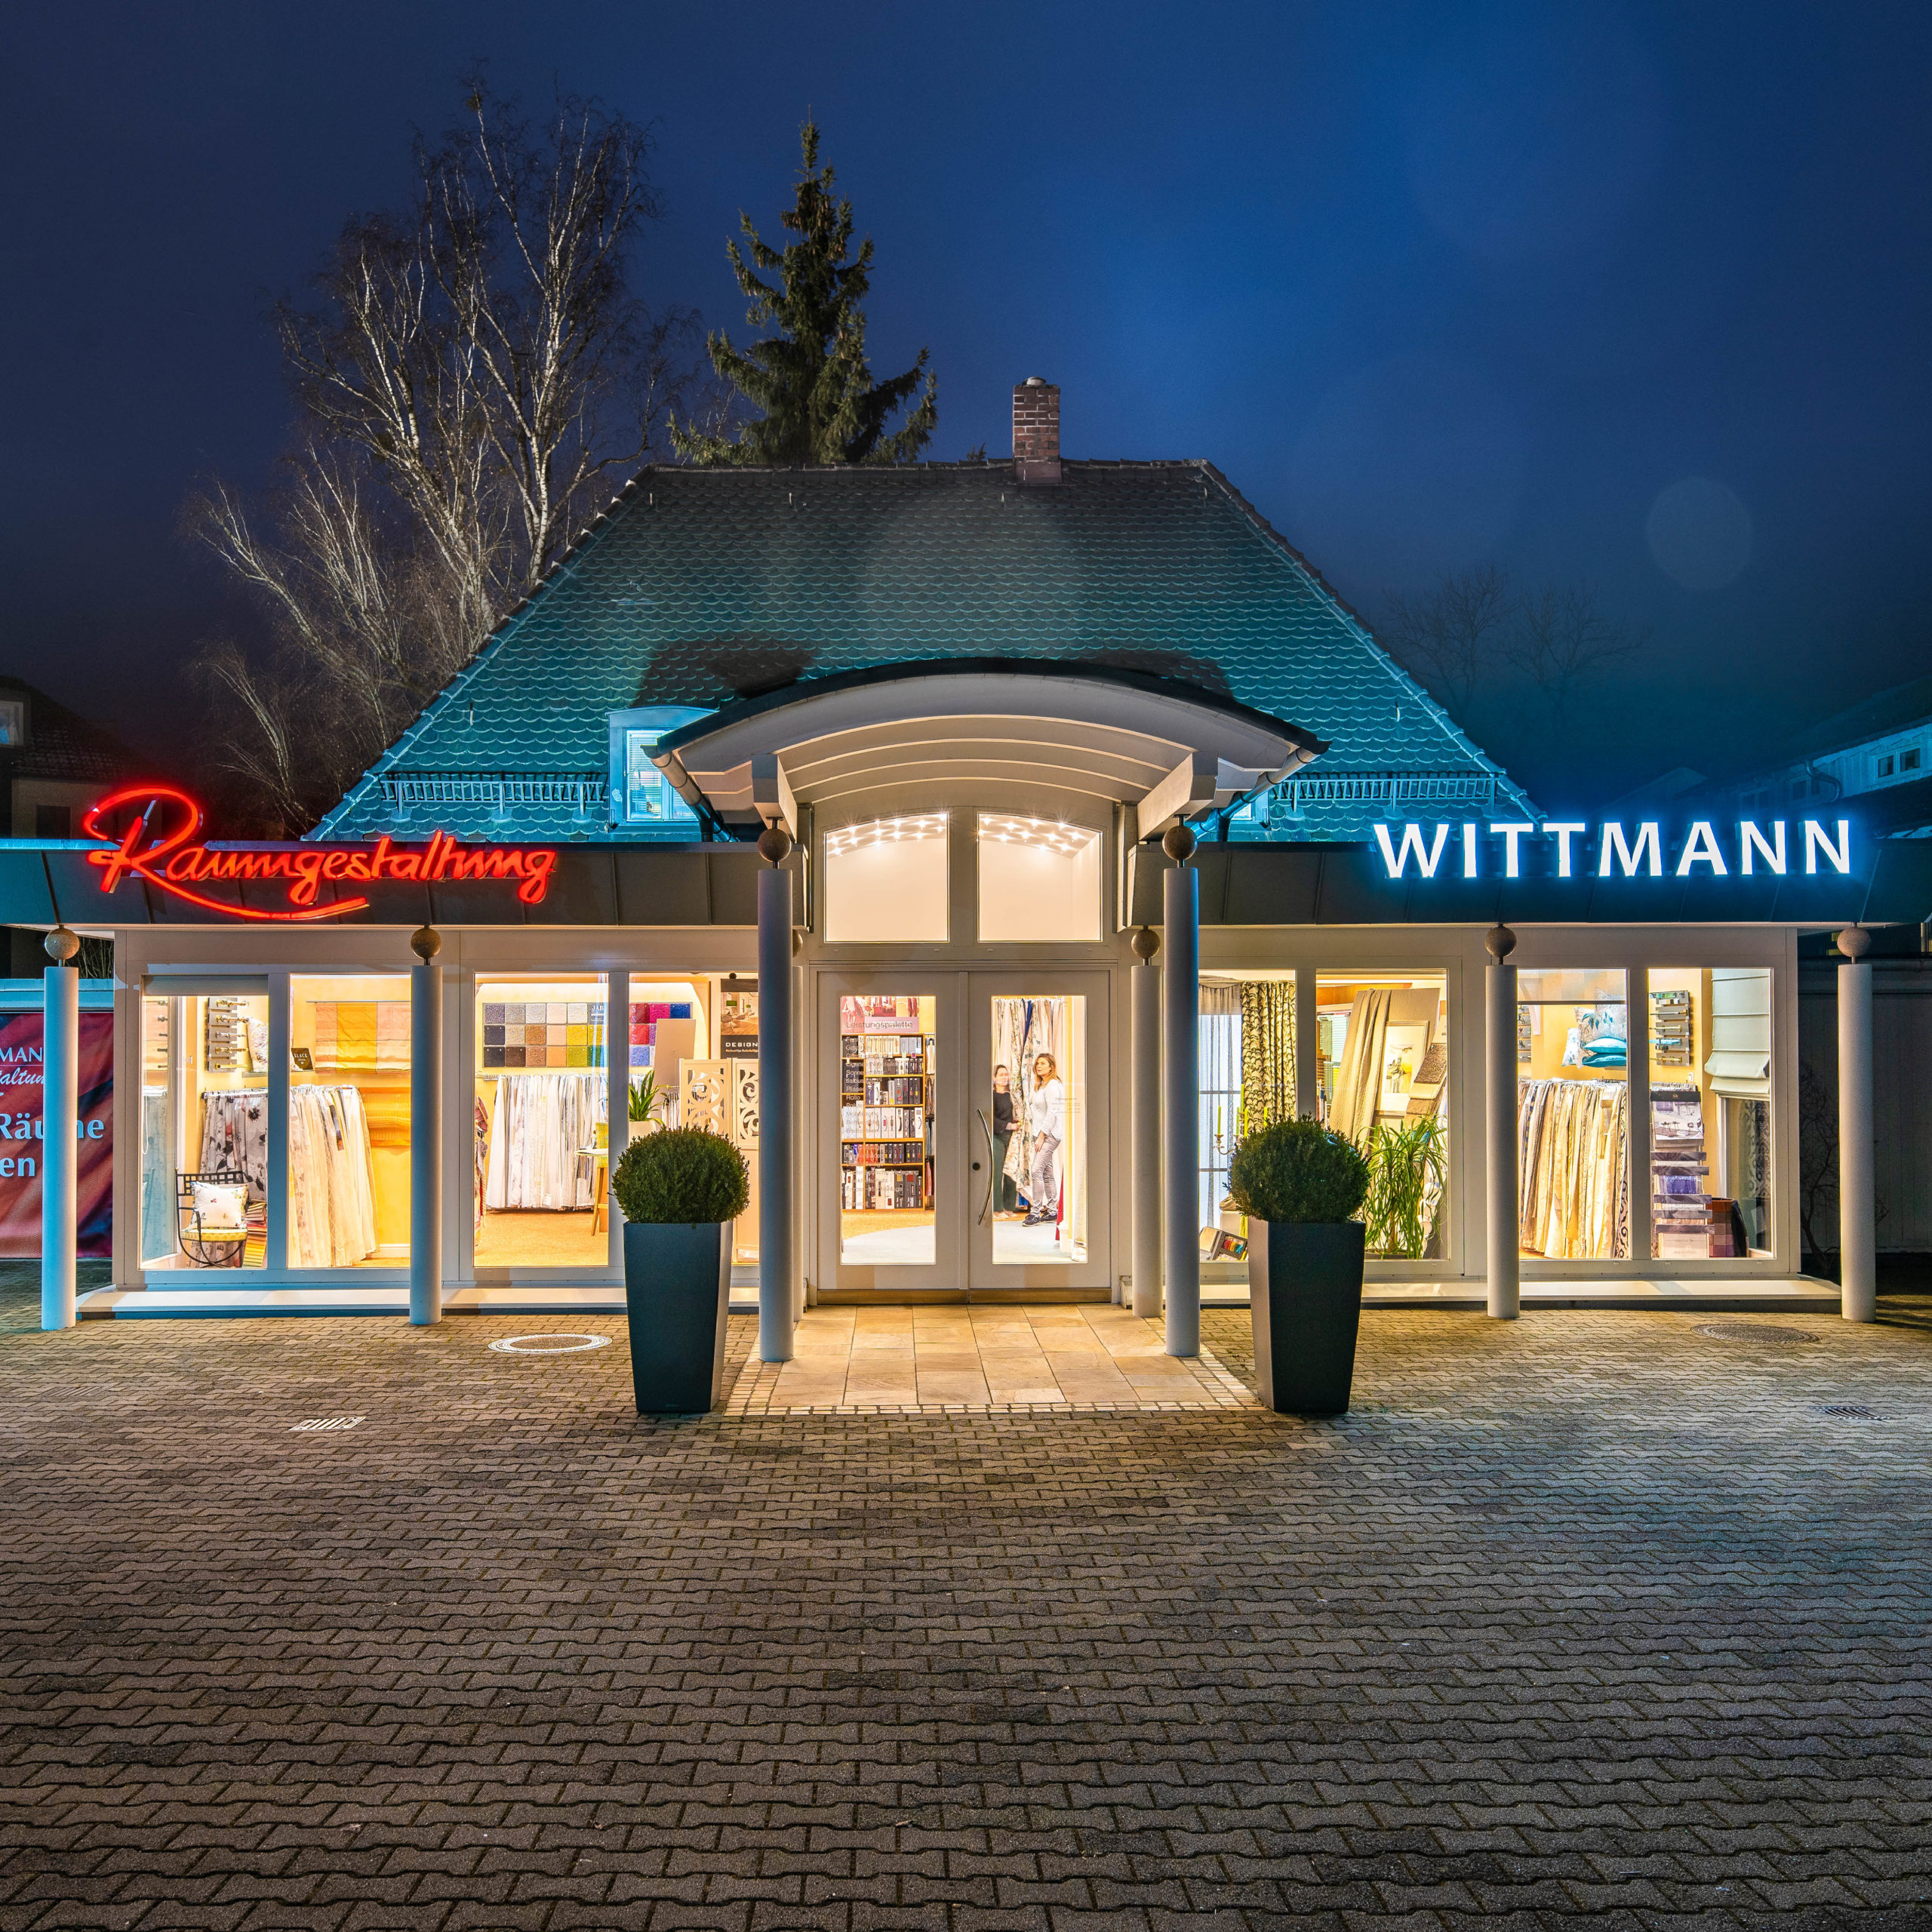 Imagefotografie für die Raumausstattung Wittmann in München